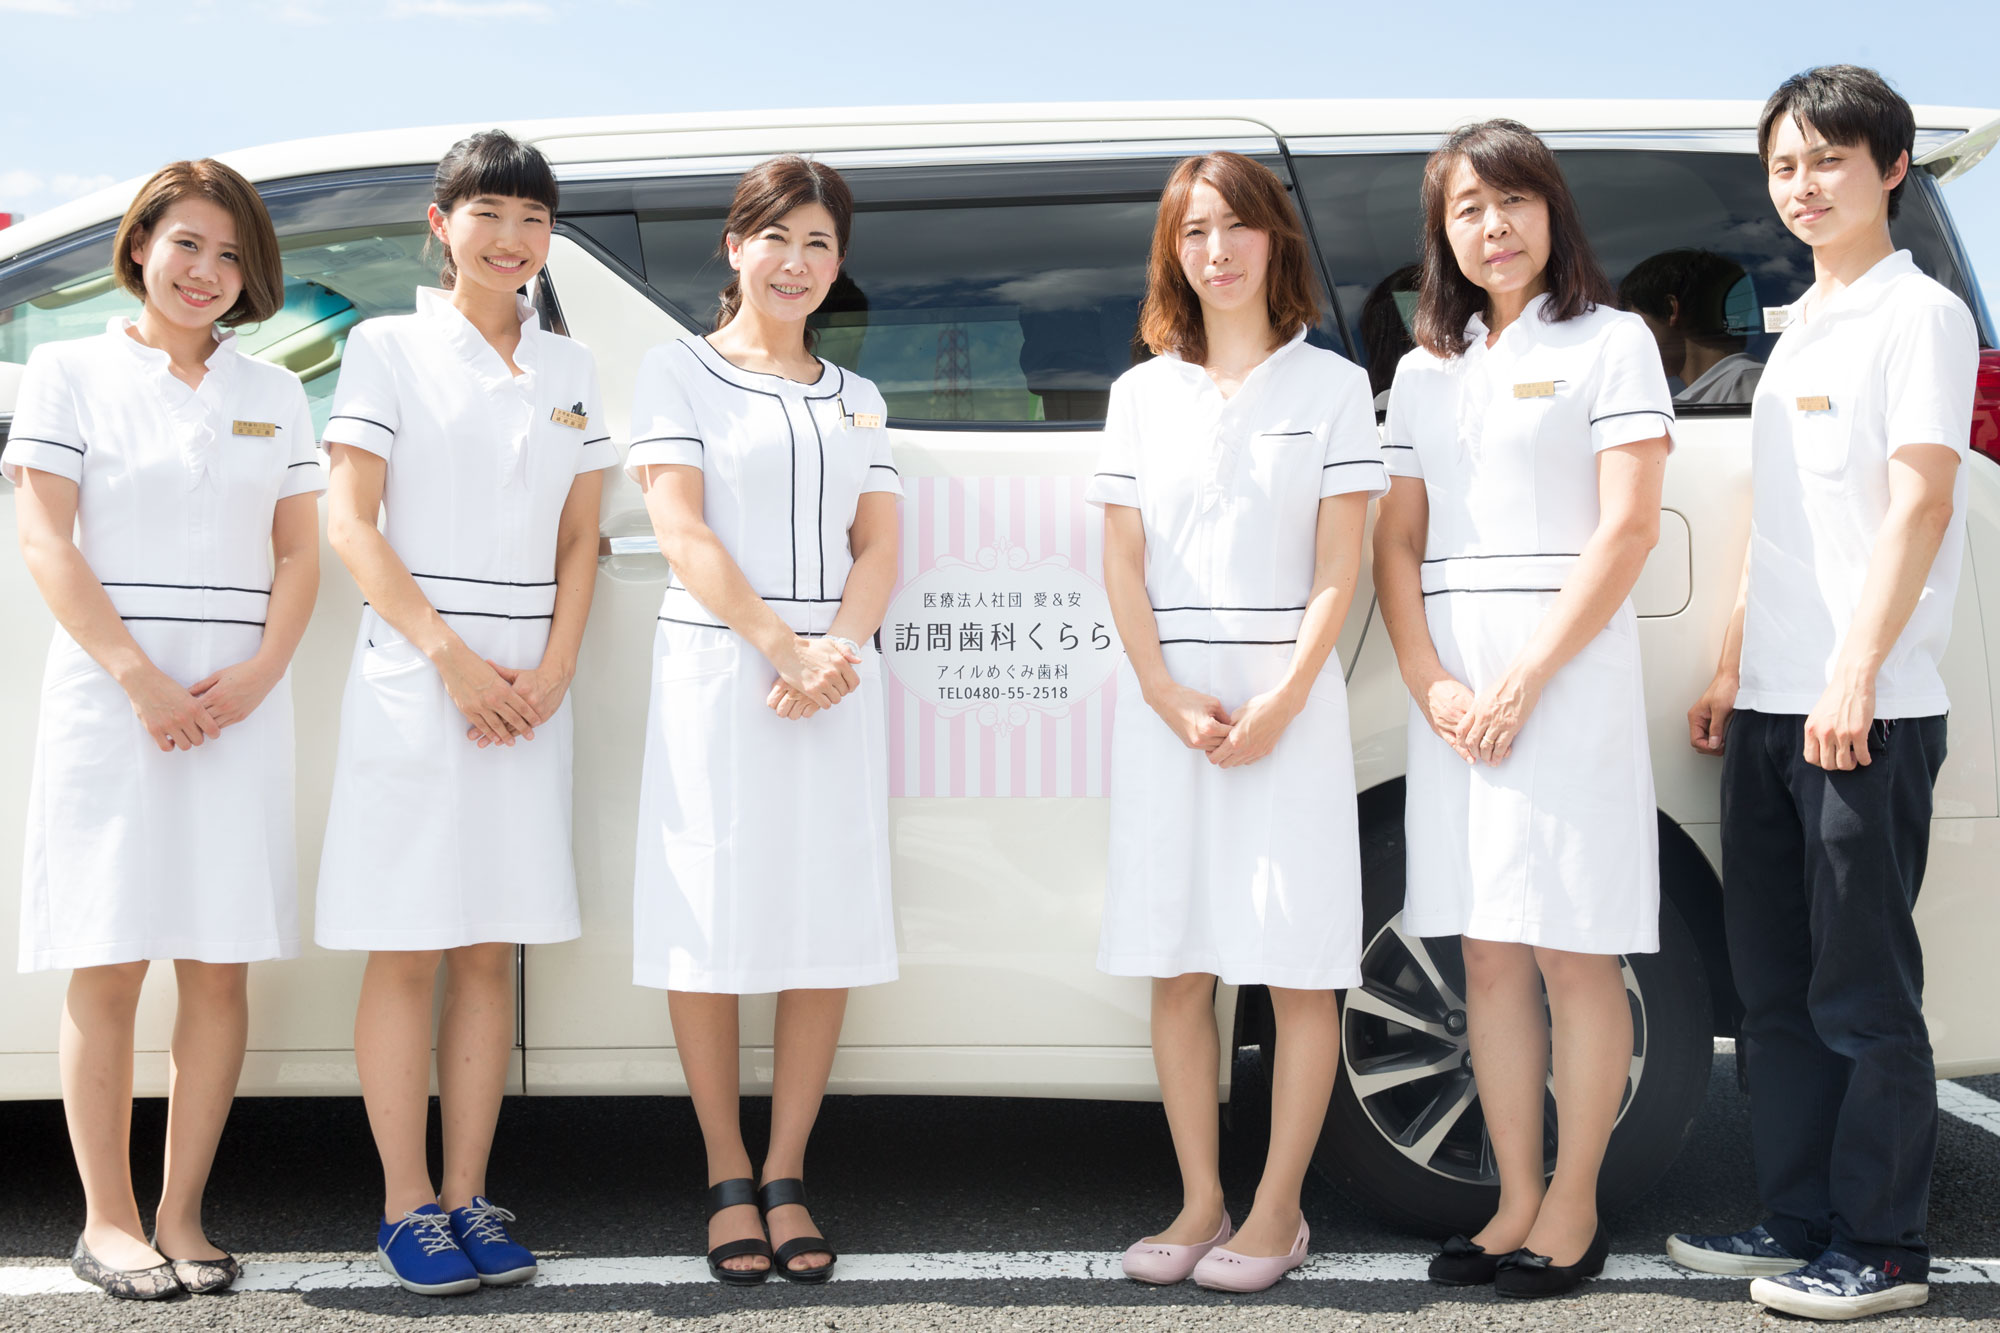 埼玉県久喜市の訪問歯科クララの公式サイトです